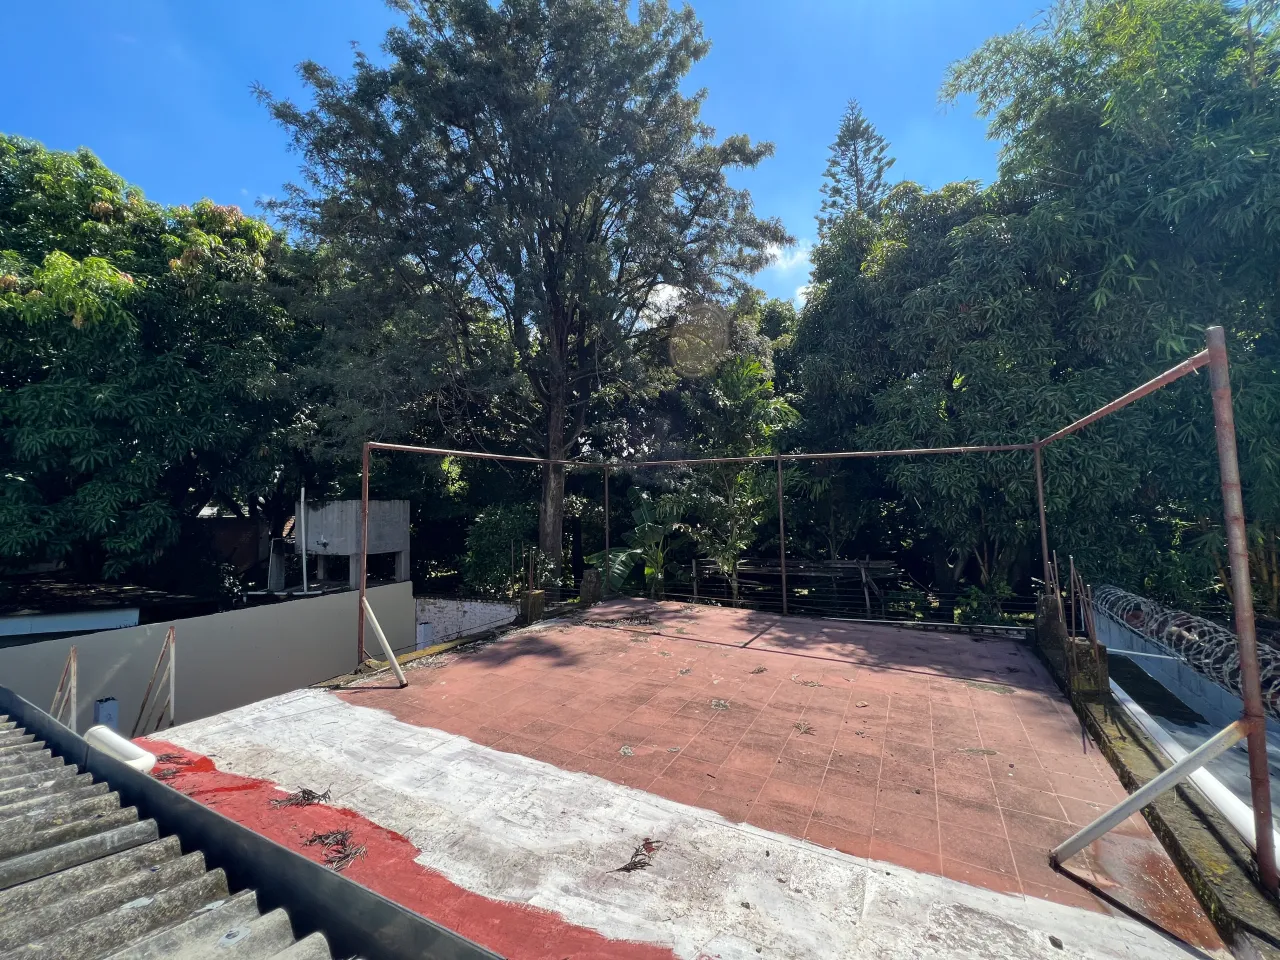 Terraza de la casa en renta situado en la colonia Humuya rodeado de arboles de día con cielo azul.